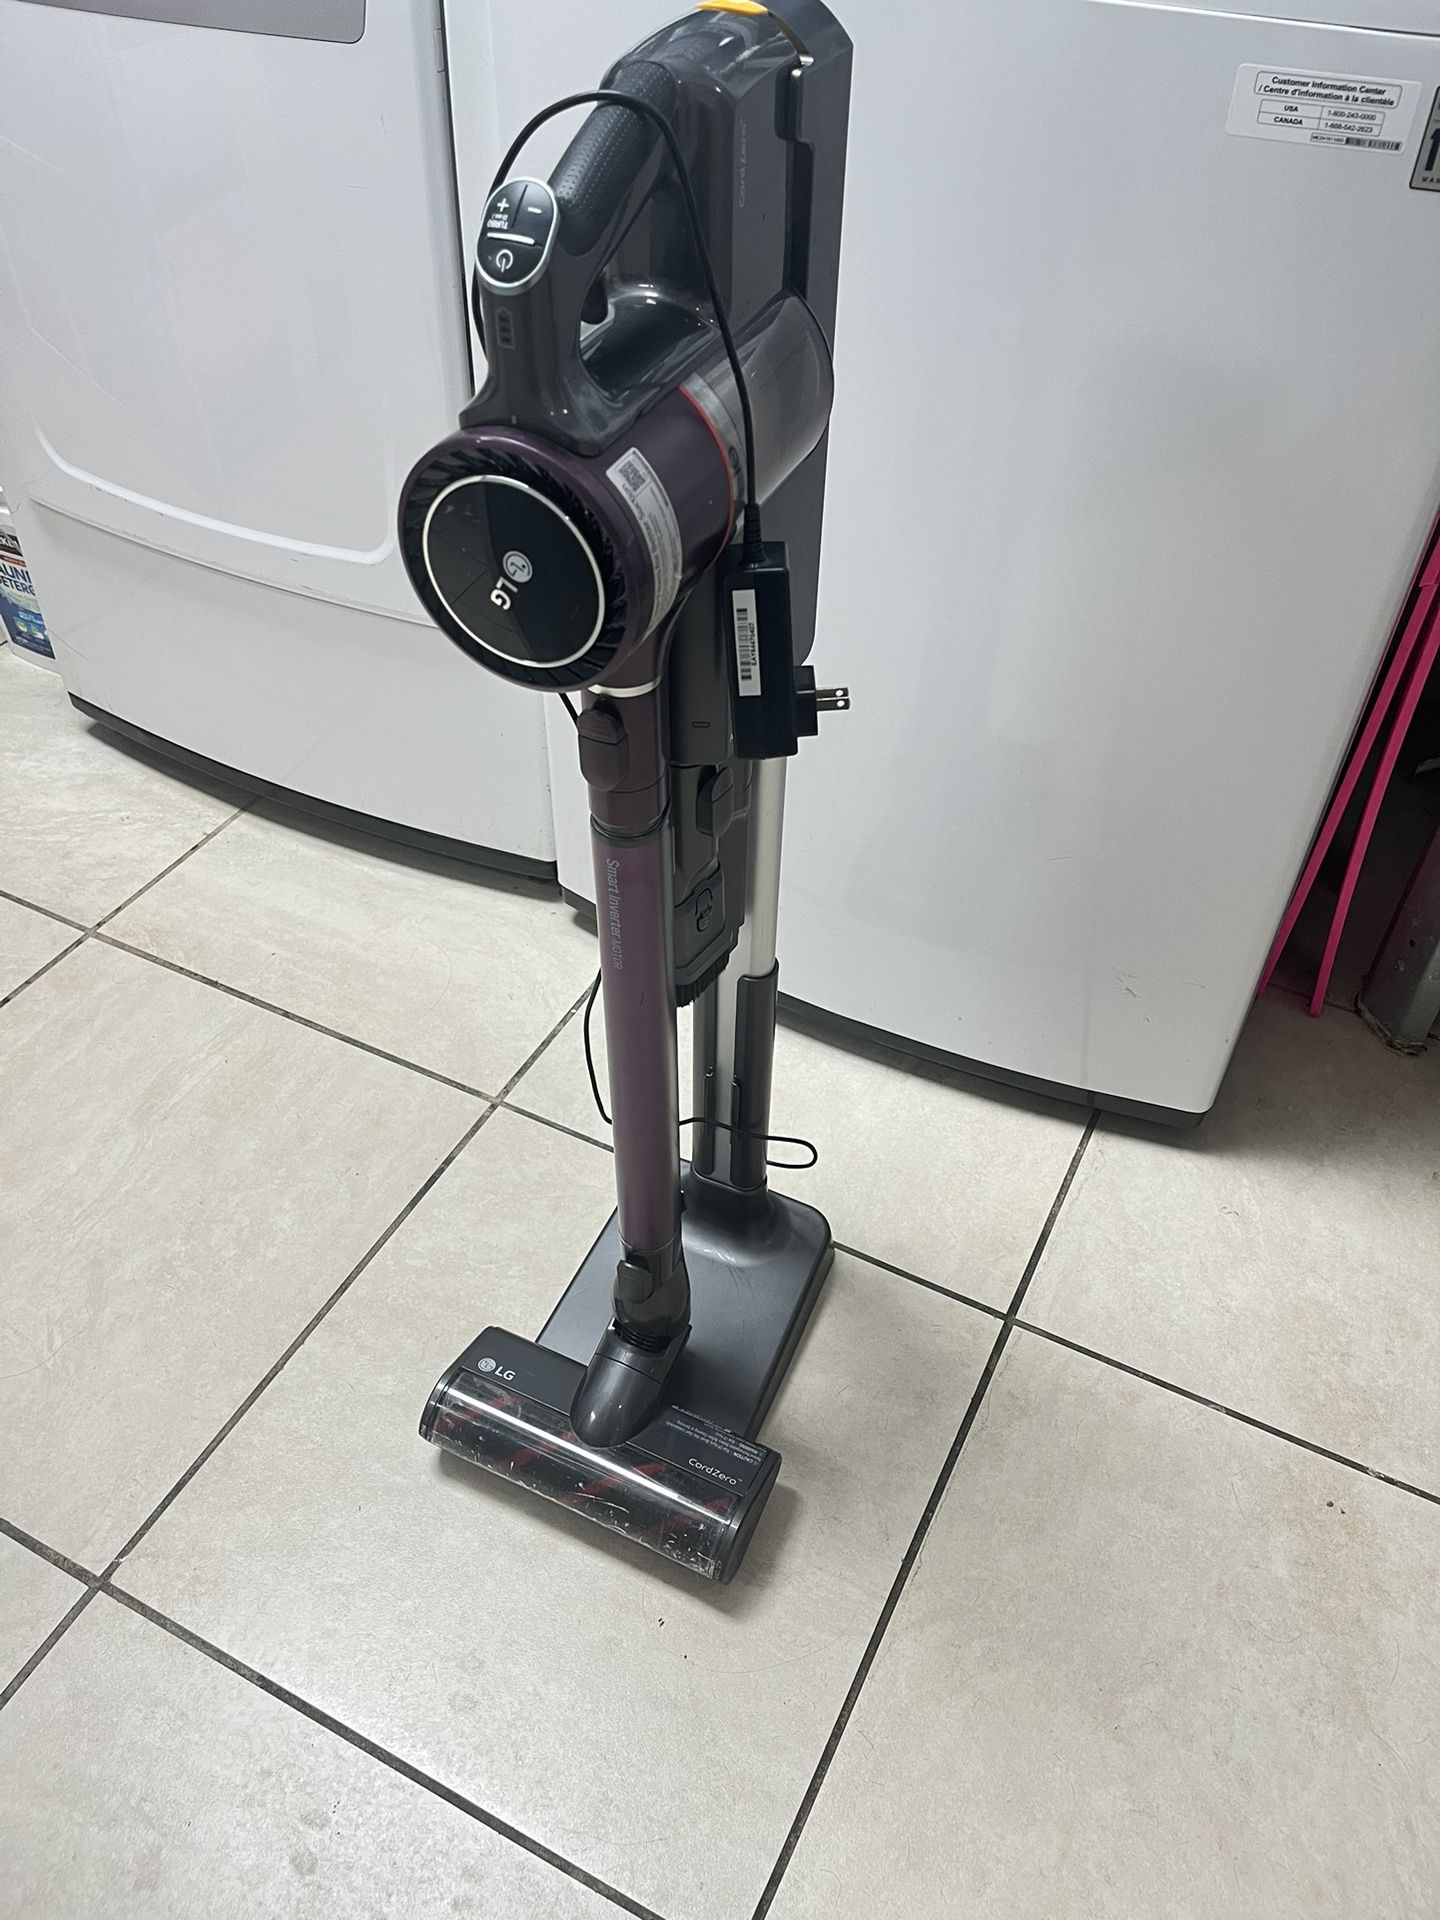 LG vacuum cleaner